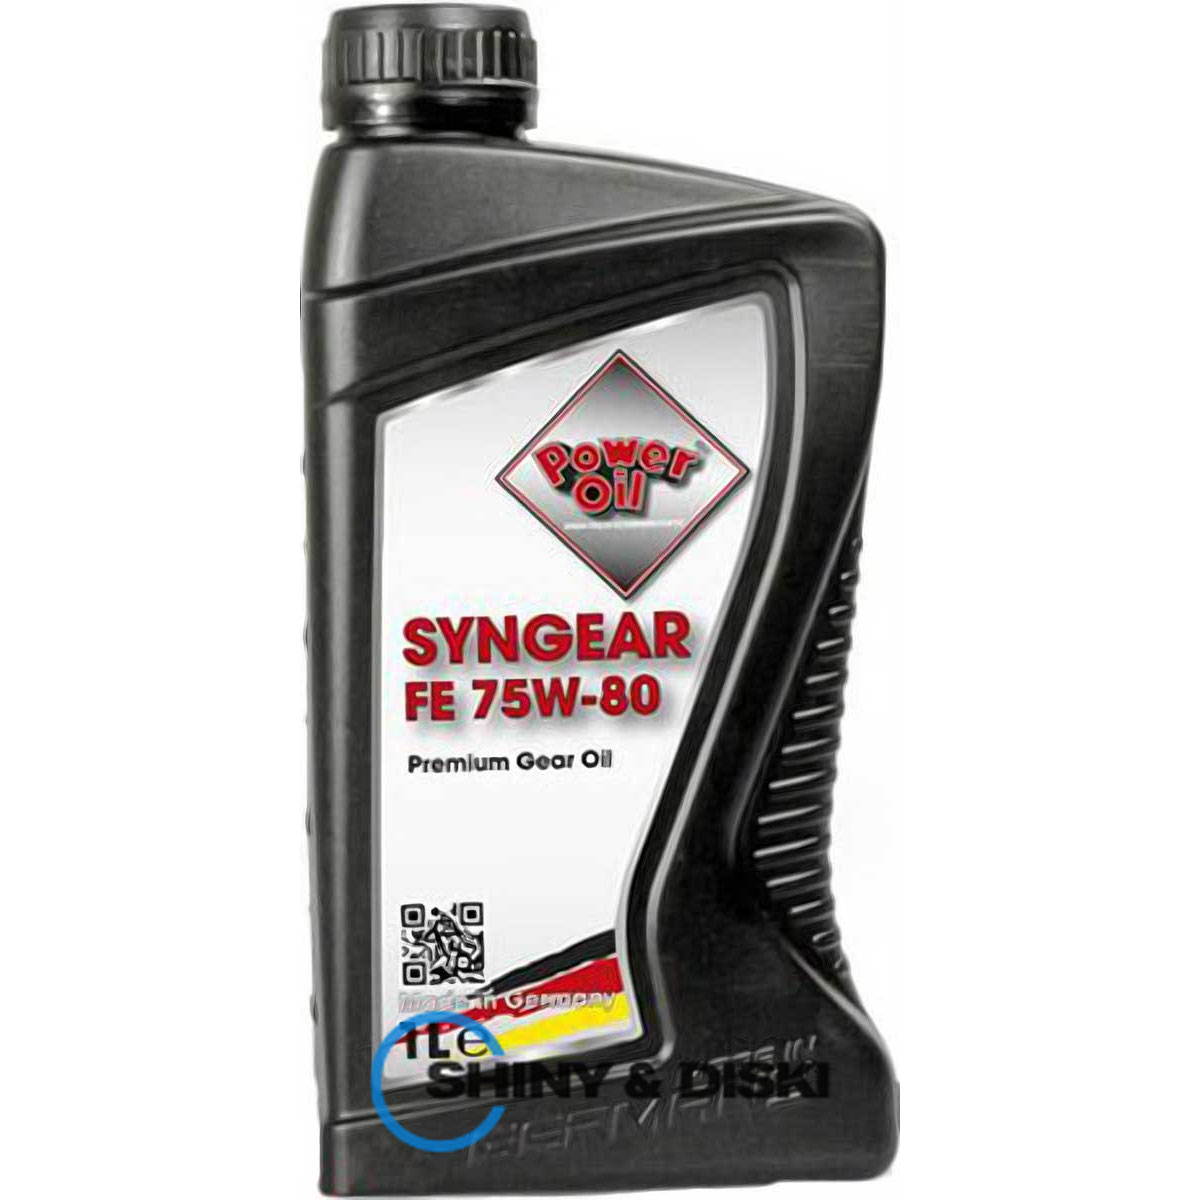 power oil syngear fe 75w-80 (1л)